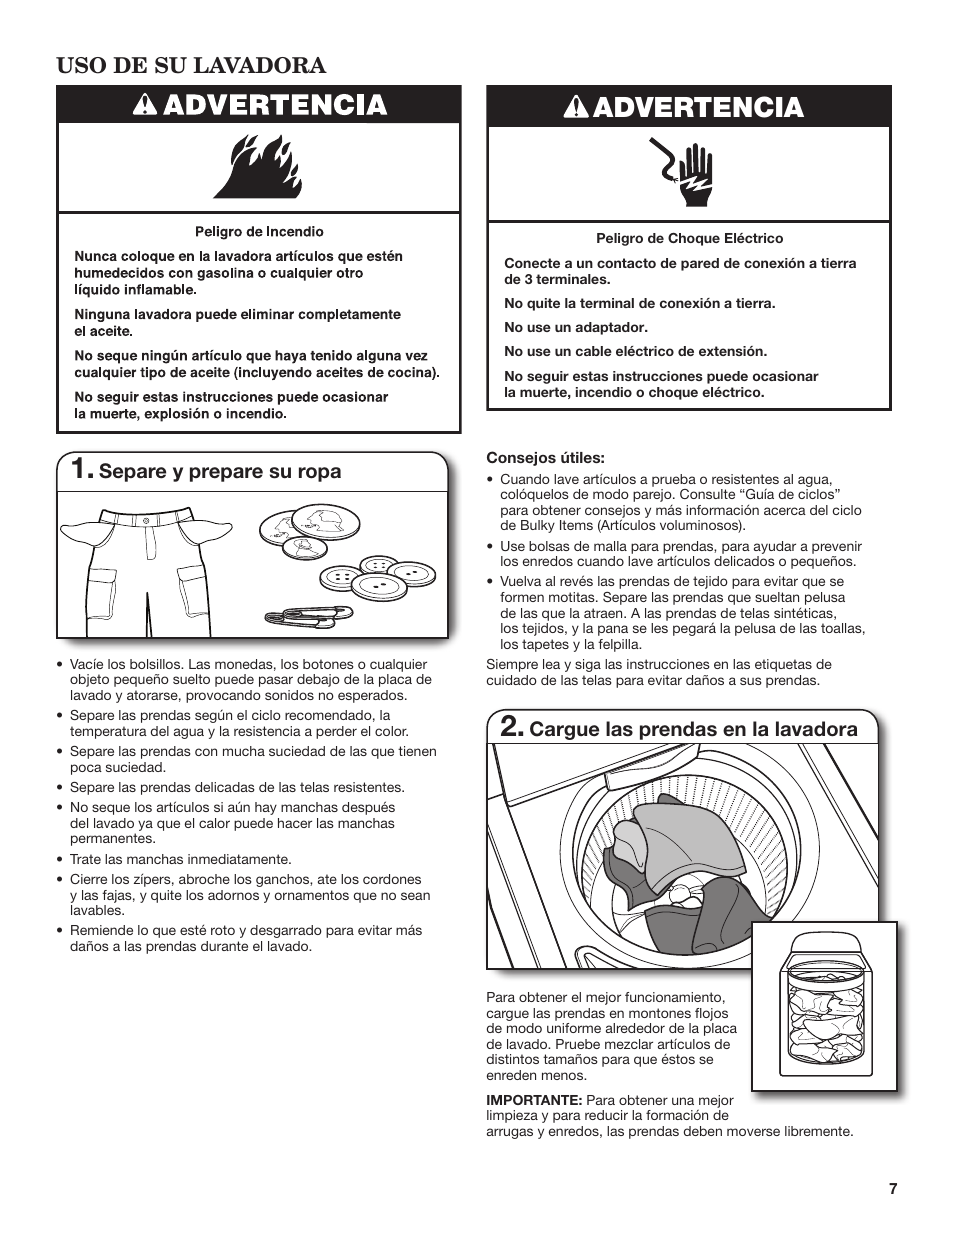 Advertencia, Uso de su lavadora, Separe y prepare su ropa | Cargue las prendas en la lavadora | Whirlpool WTW5500BW Manual del usuario | Página 7 / 19